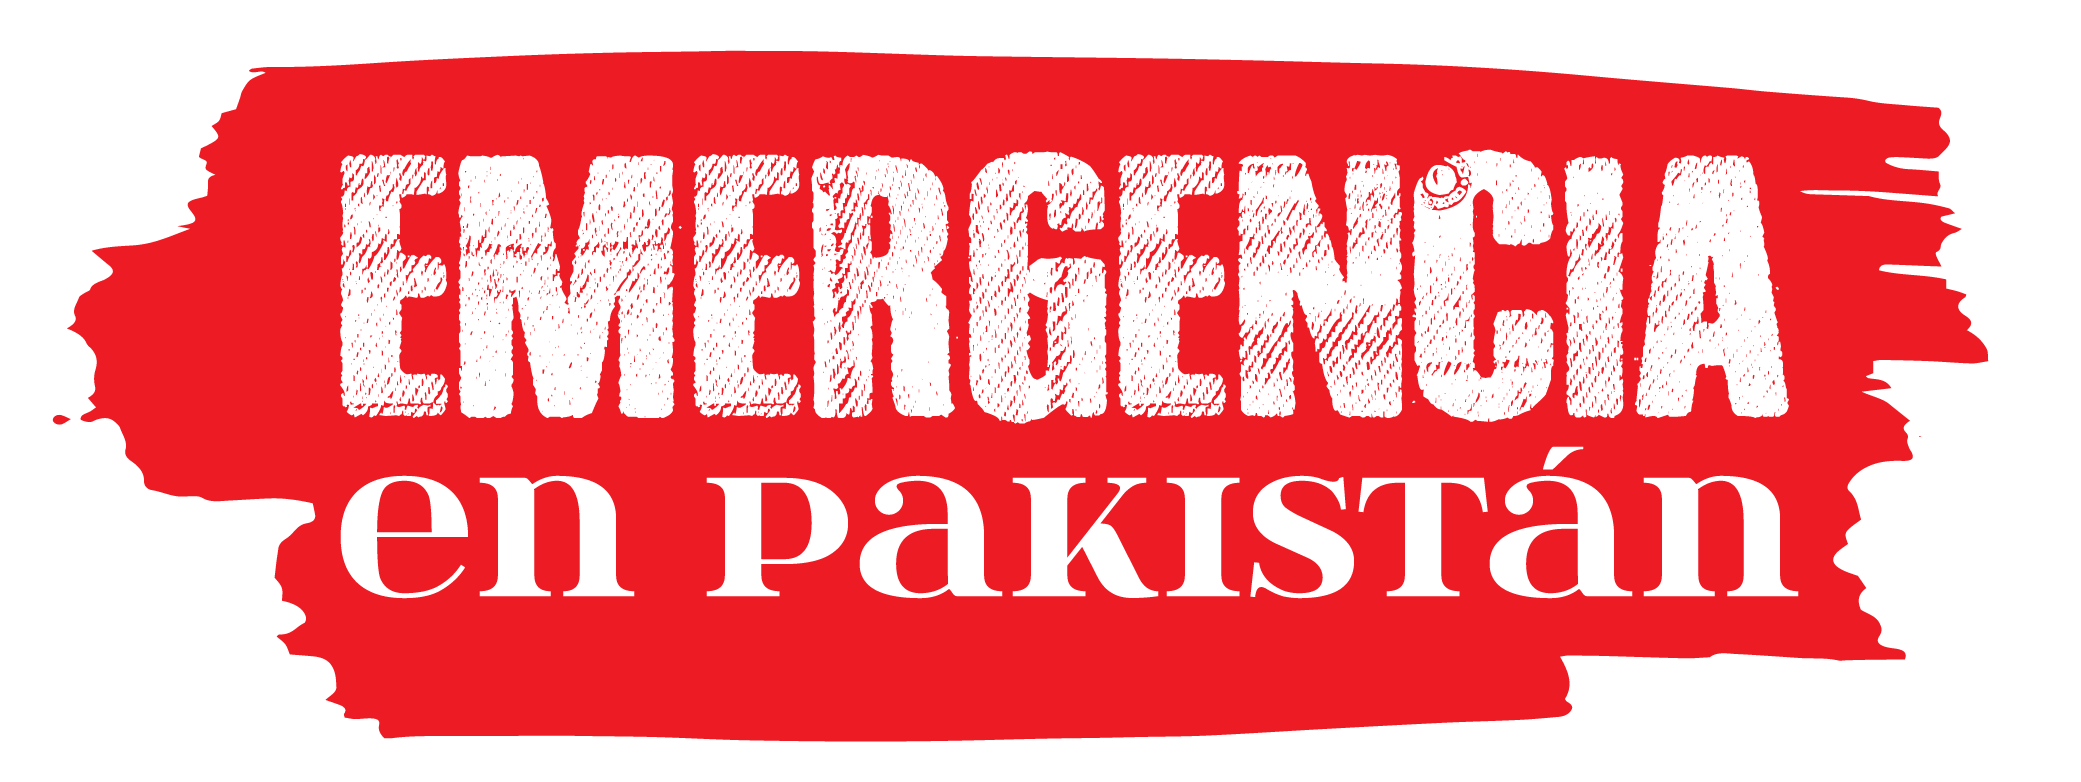 Emergencia en Pakistán